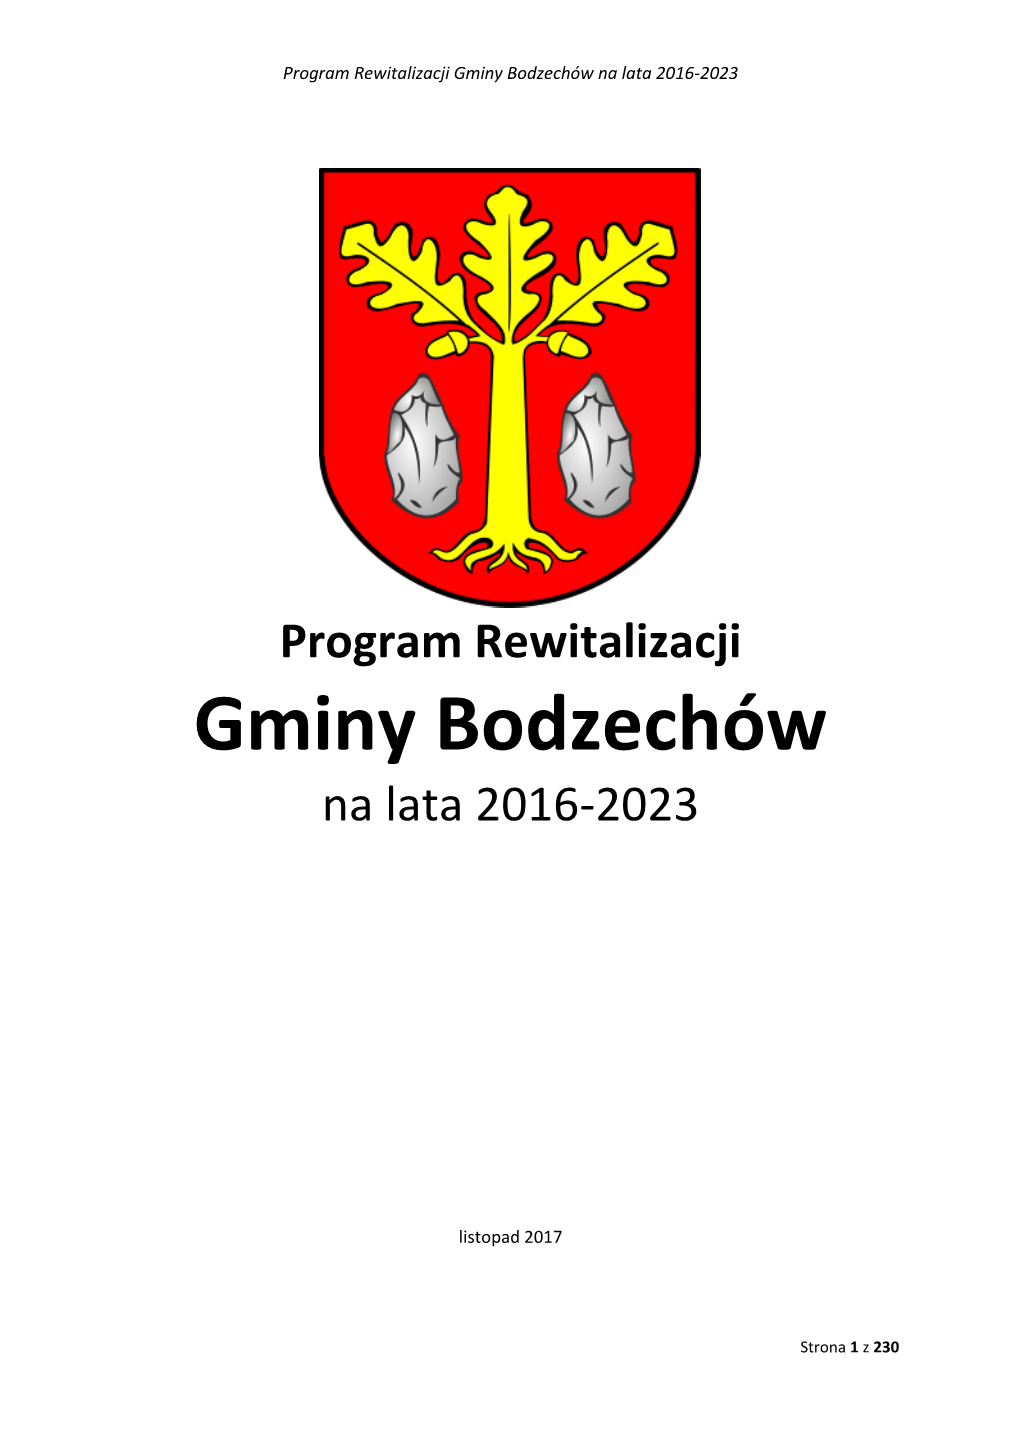 Program Rewitalizacji Gminy Bodzechów Na Lata 2016-2023